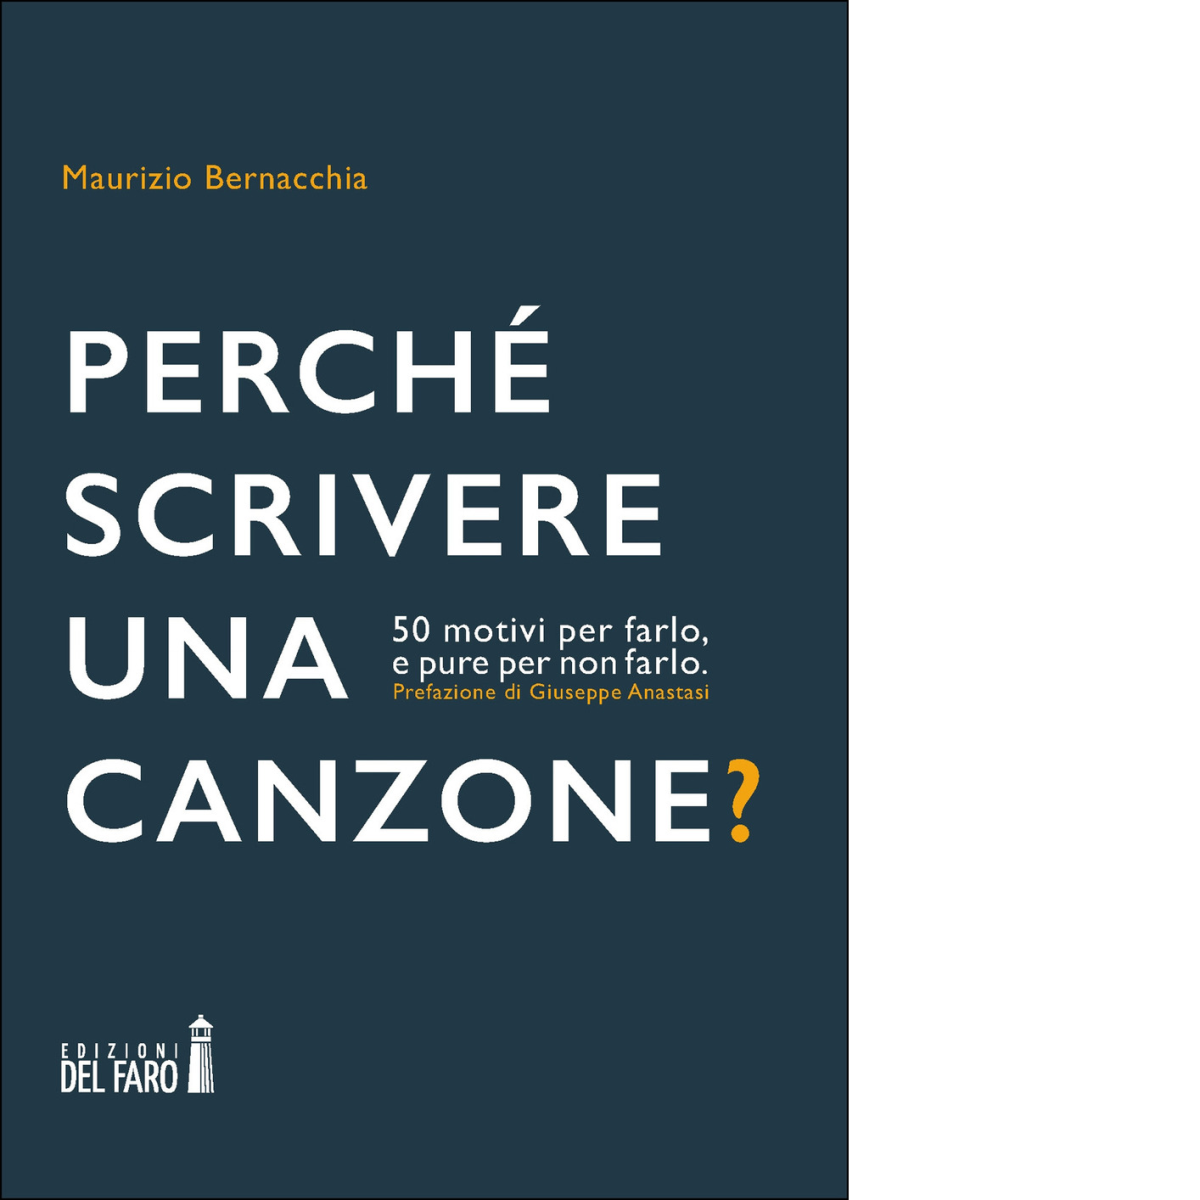 PERCH? SCRIVERE UNA CANZONE? di Bernacchia Maurizio - Del Faro, 2021 libro usato